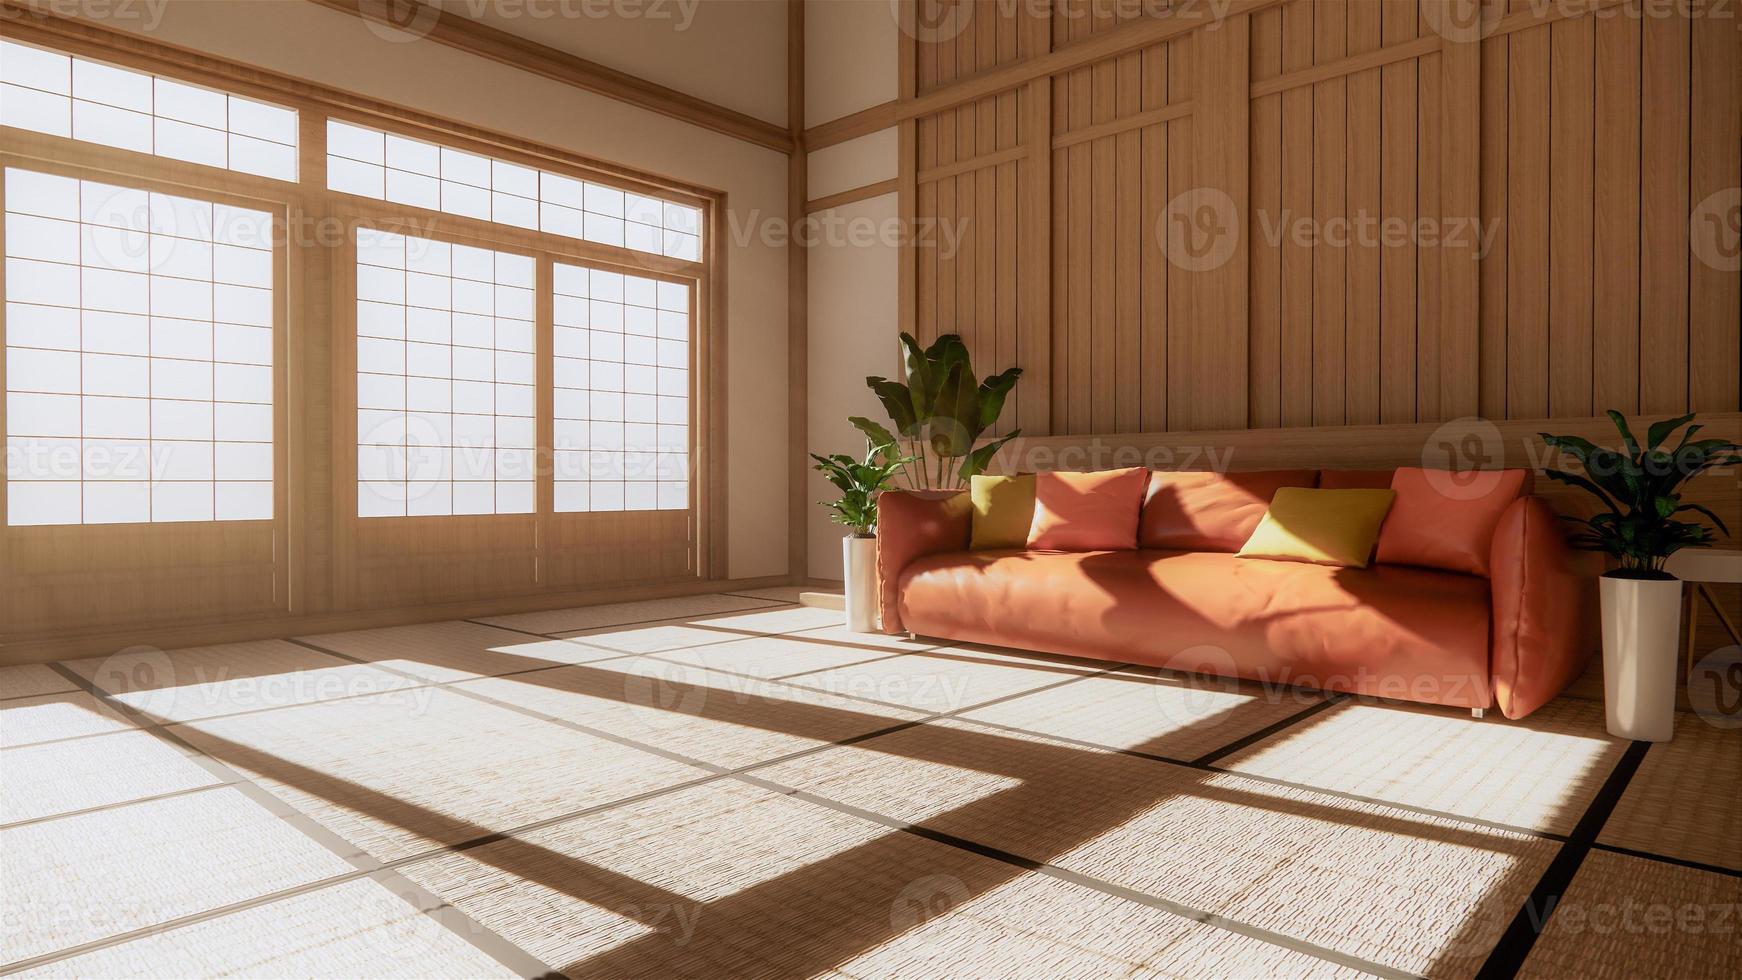 divano arancione in stile giapponese sulla stanza giappone e lo sfondo bianco fornisce una finestra per l'editing.3d rendering foto